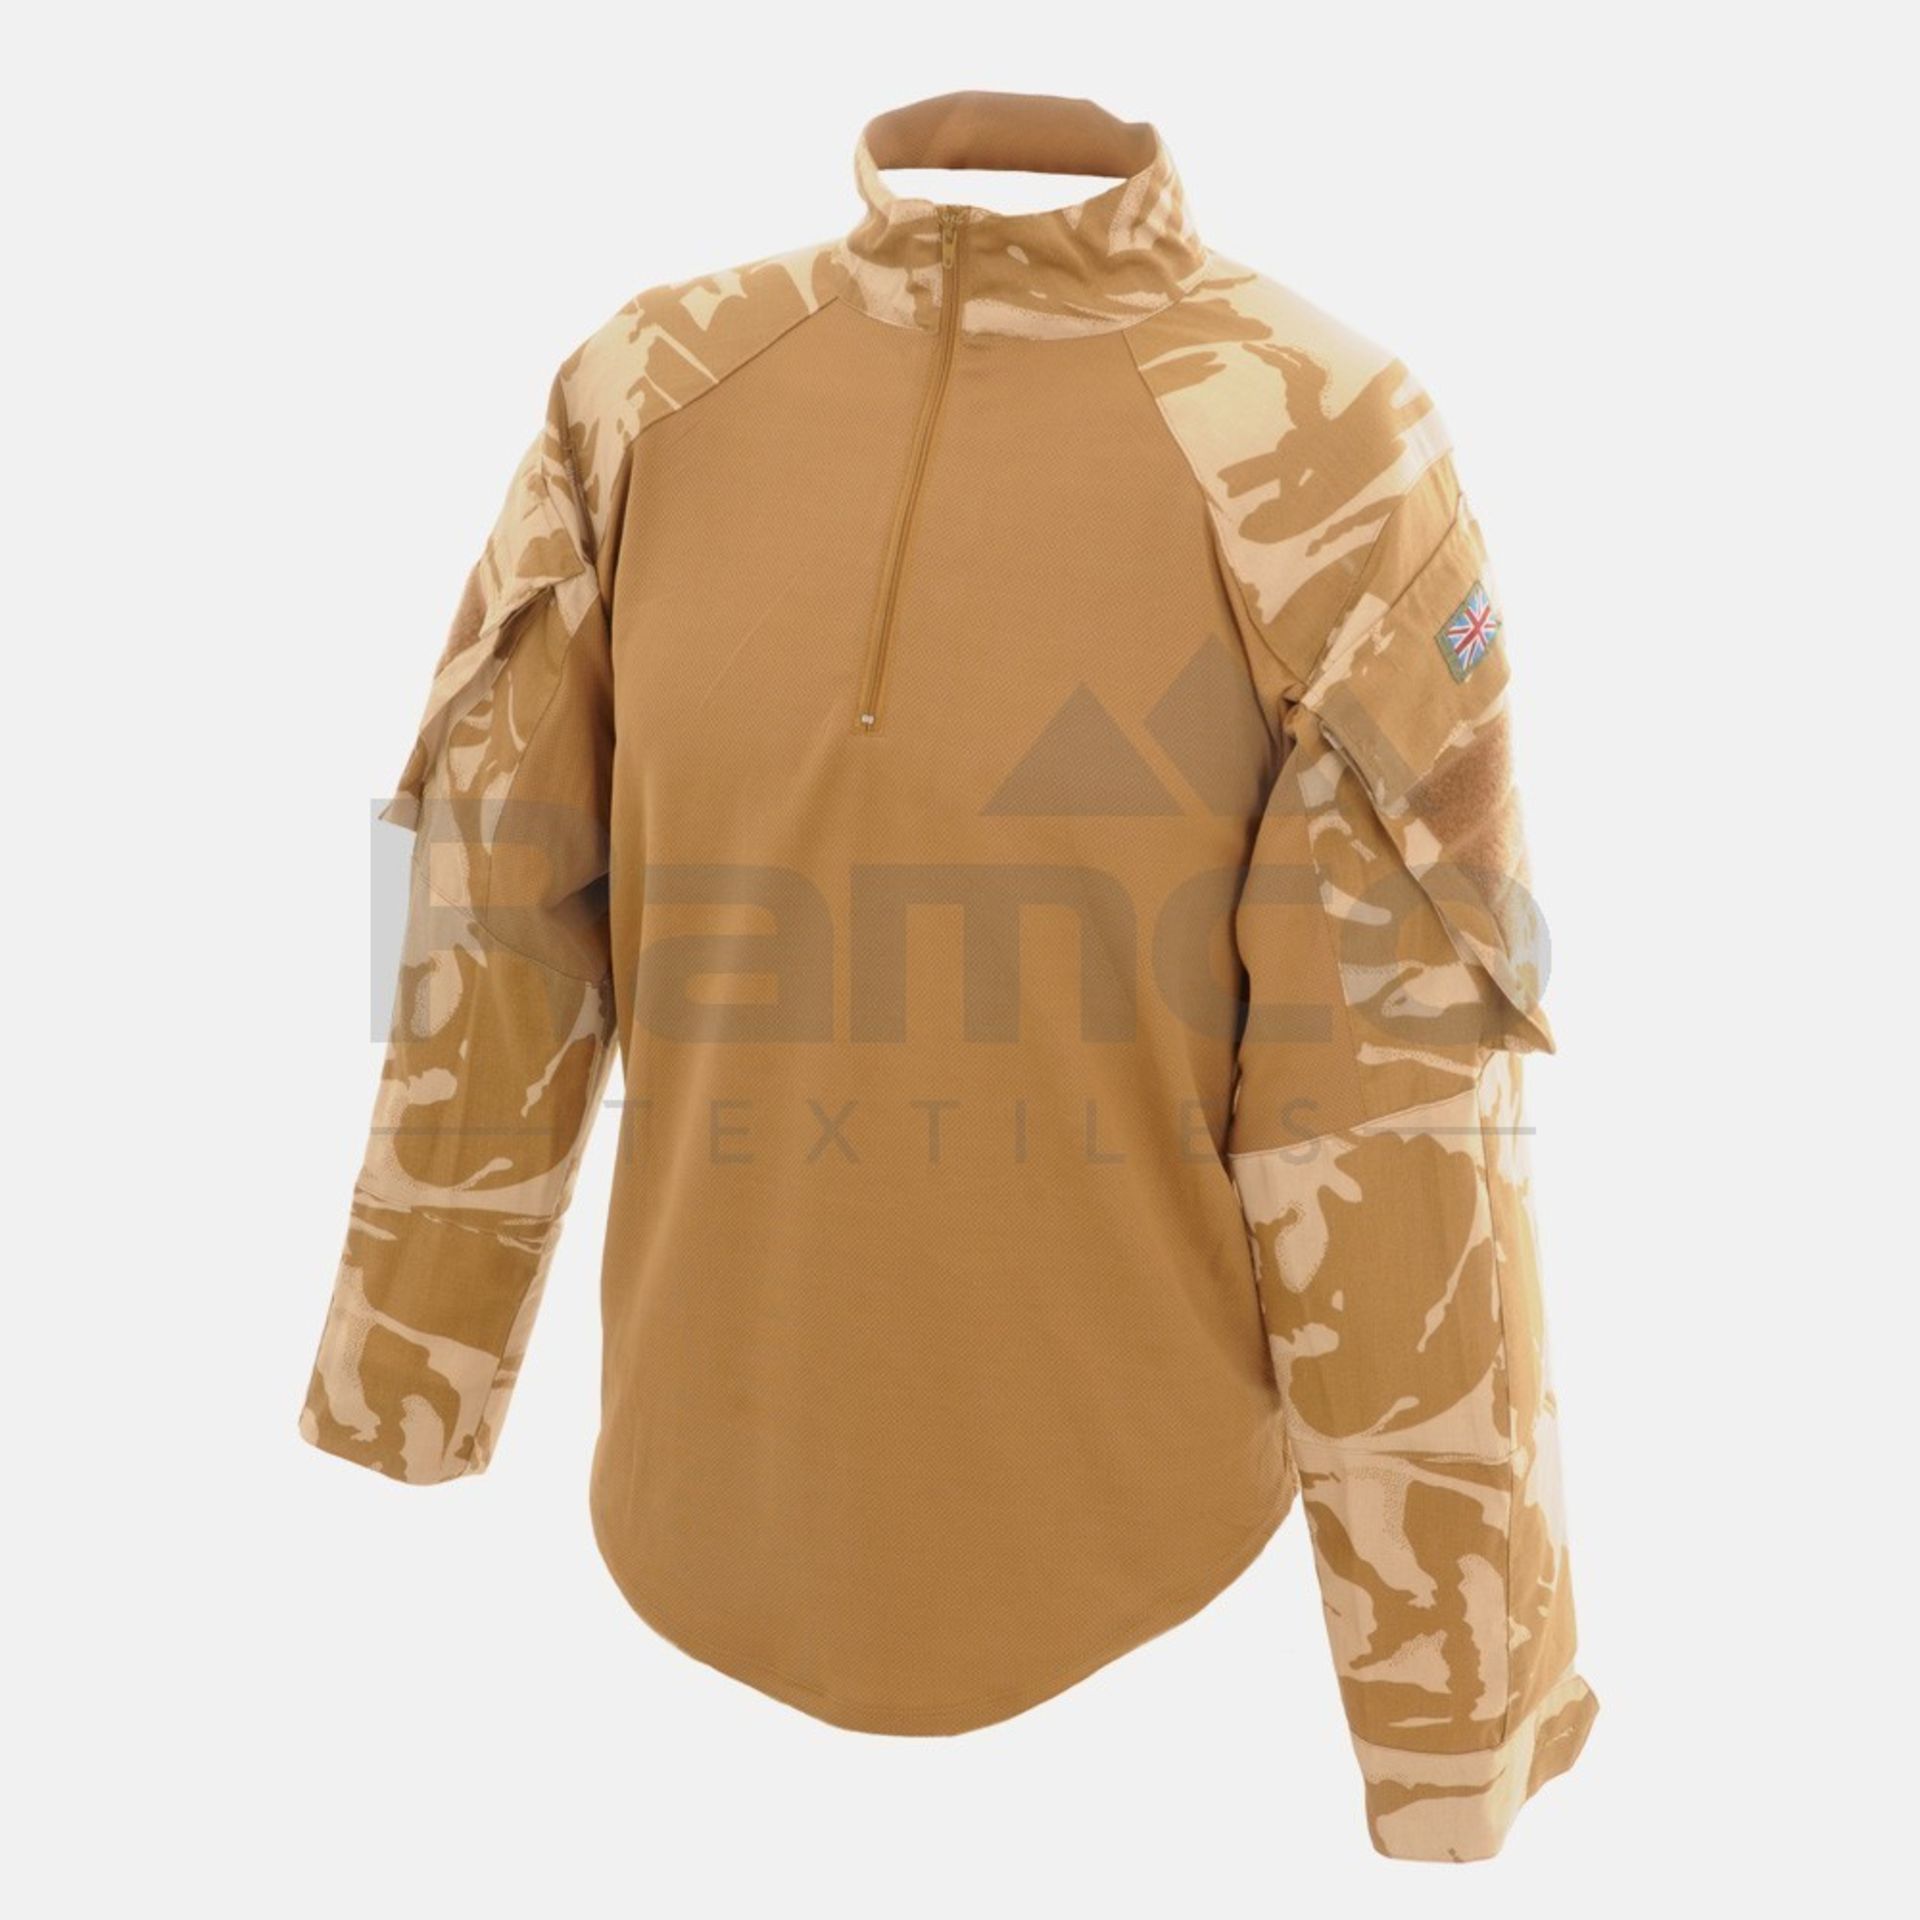 6x Under Body Armour Combat (UBACS) Desert Shirt - Various sizes